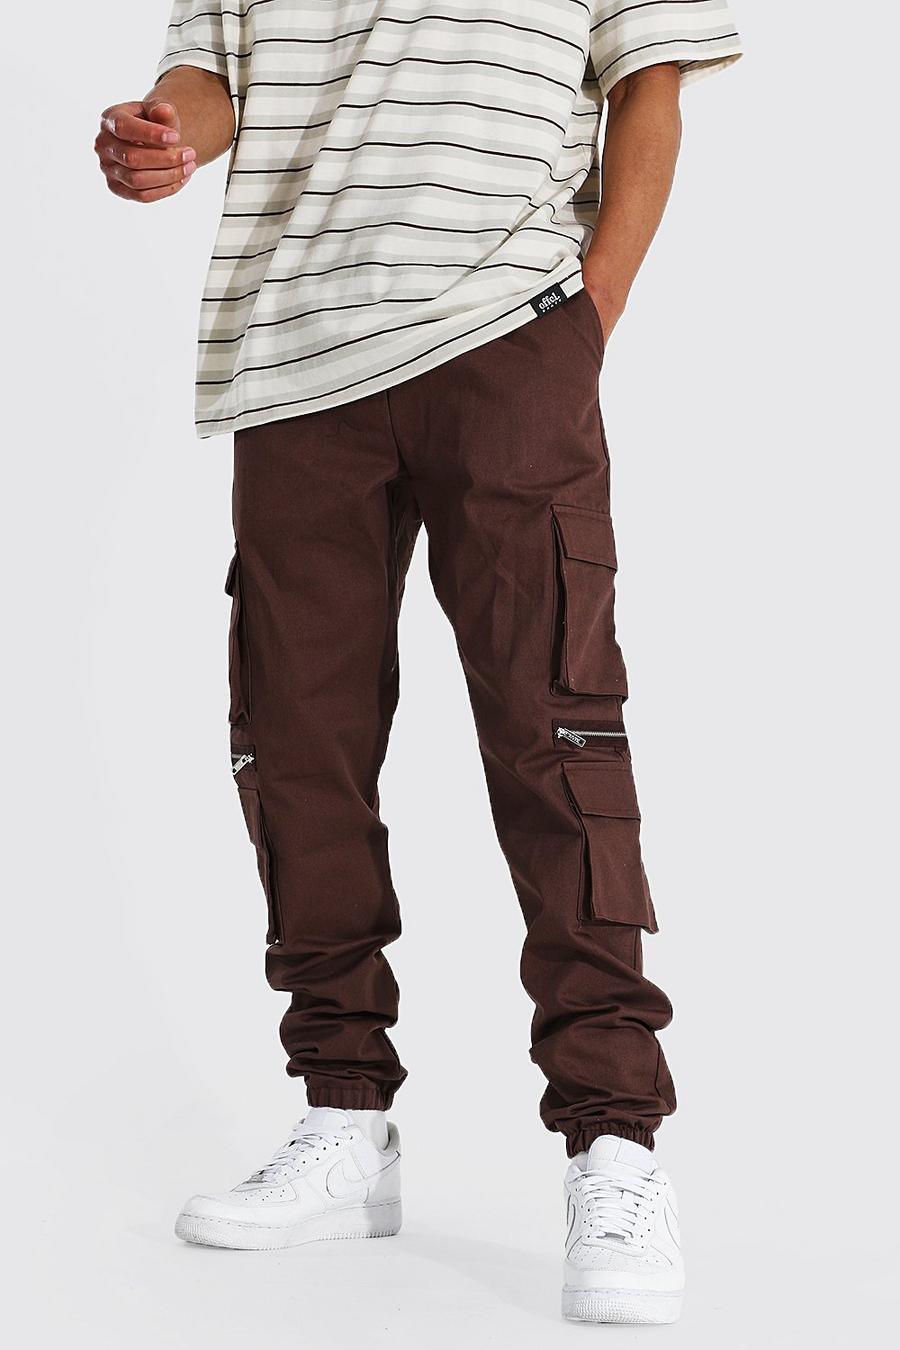 Pantalón corto Tall MAN cargo con cremallera y multibolsillos, Chocolate image number 1